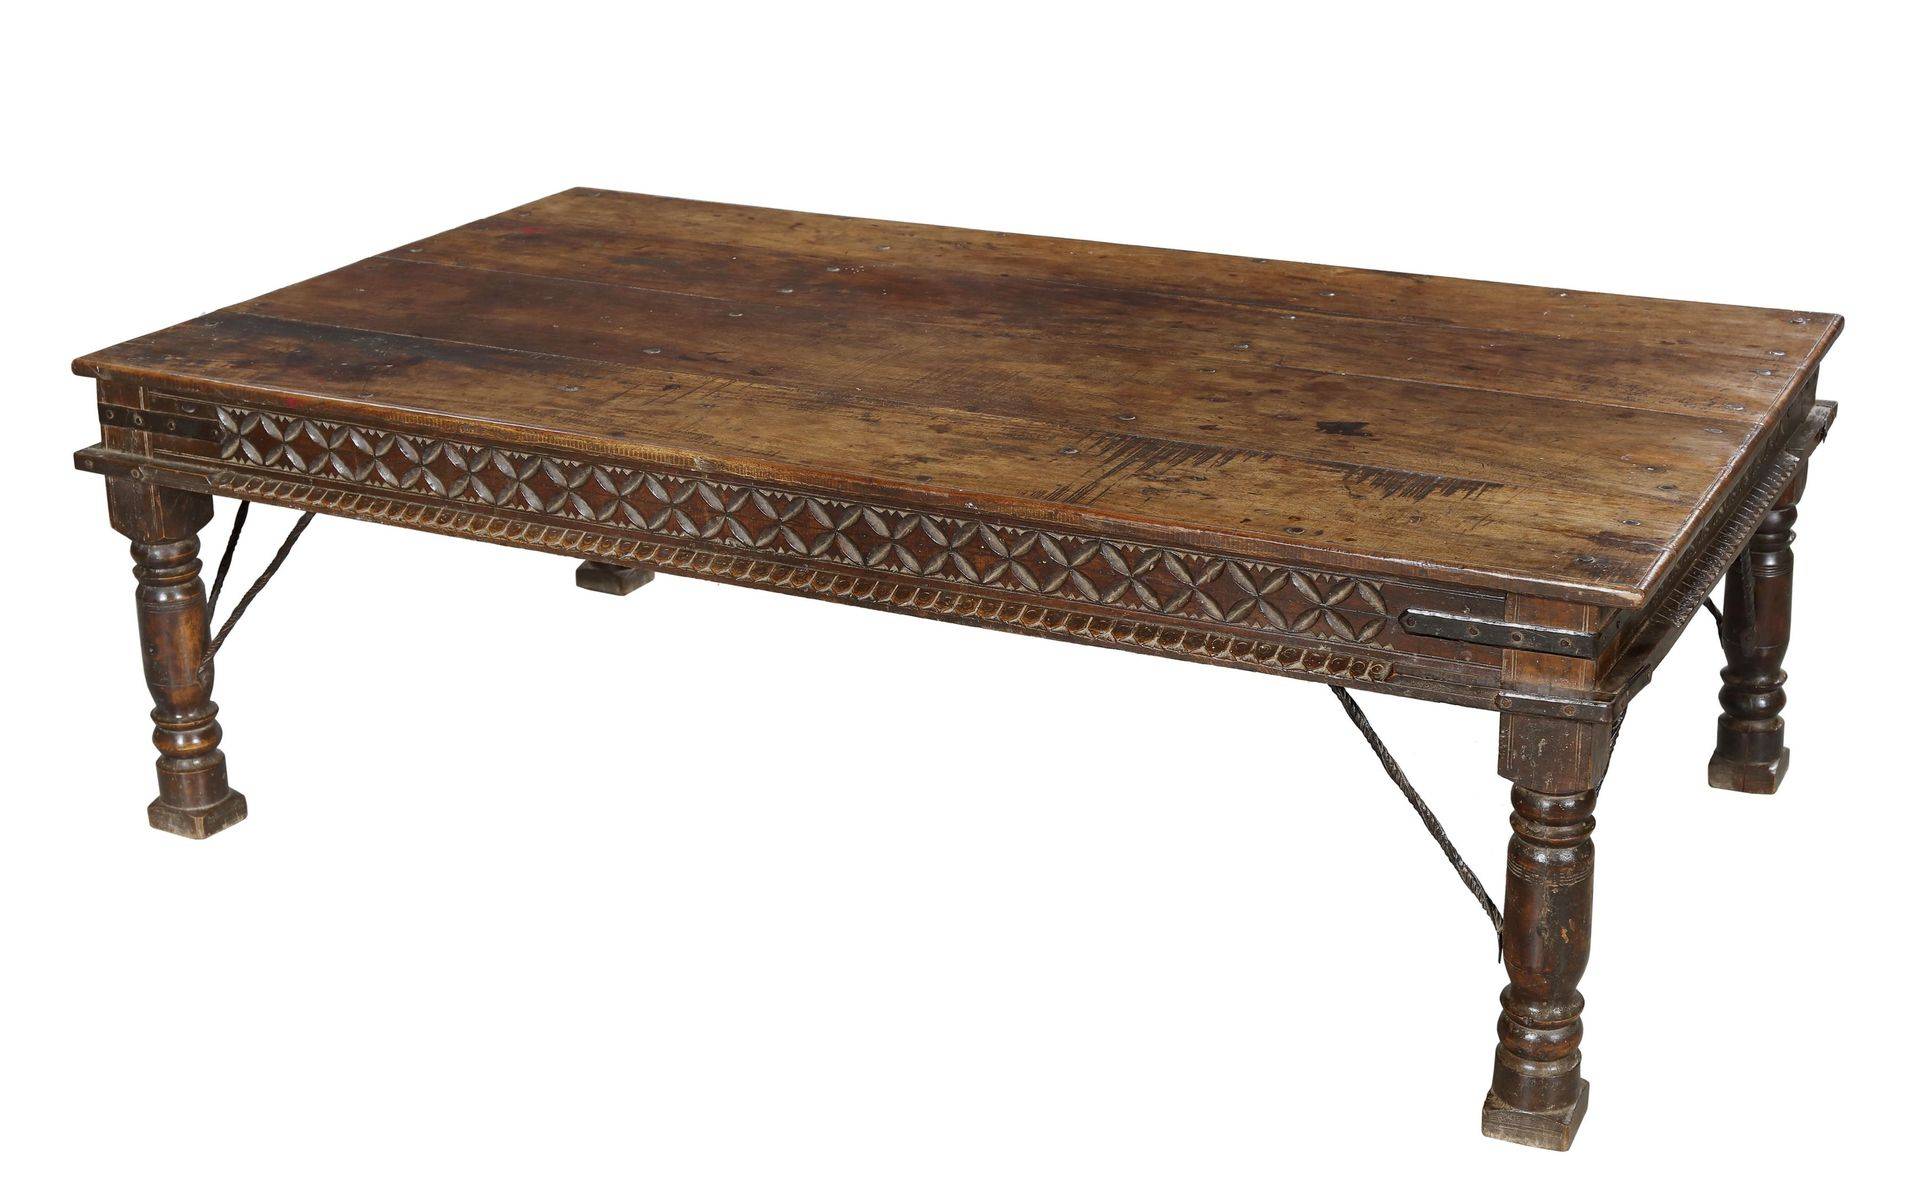 Konferenčný stôl z teakového dreva, ručné rezby, 182x104x60cm